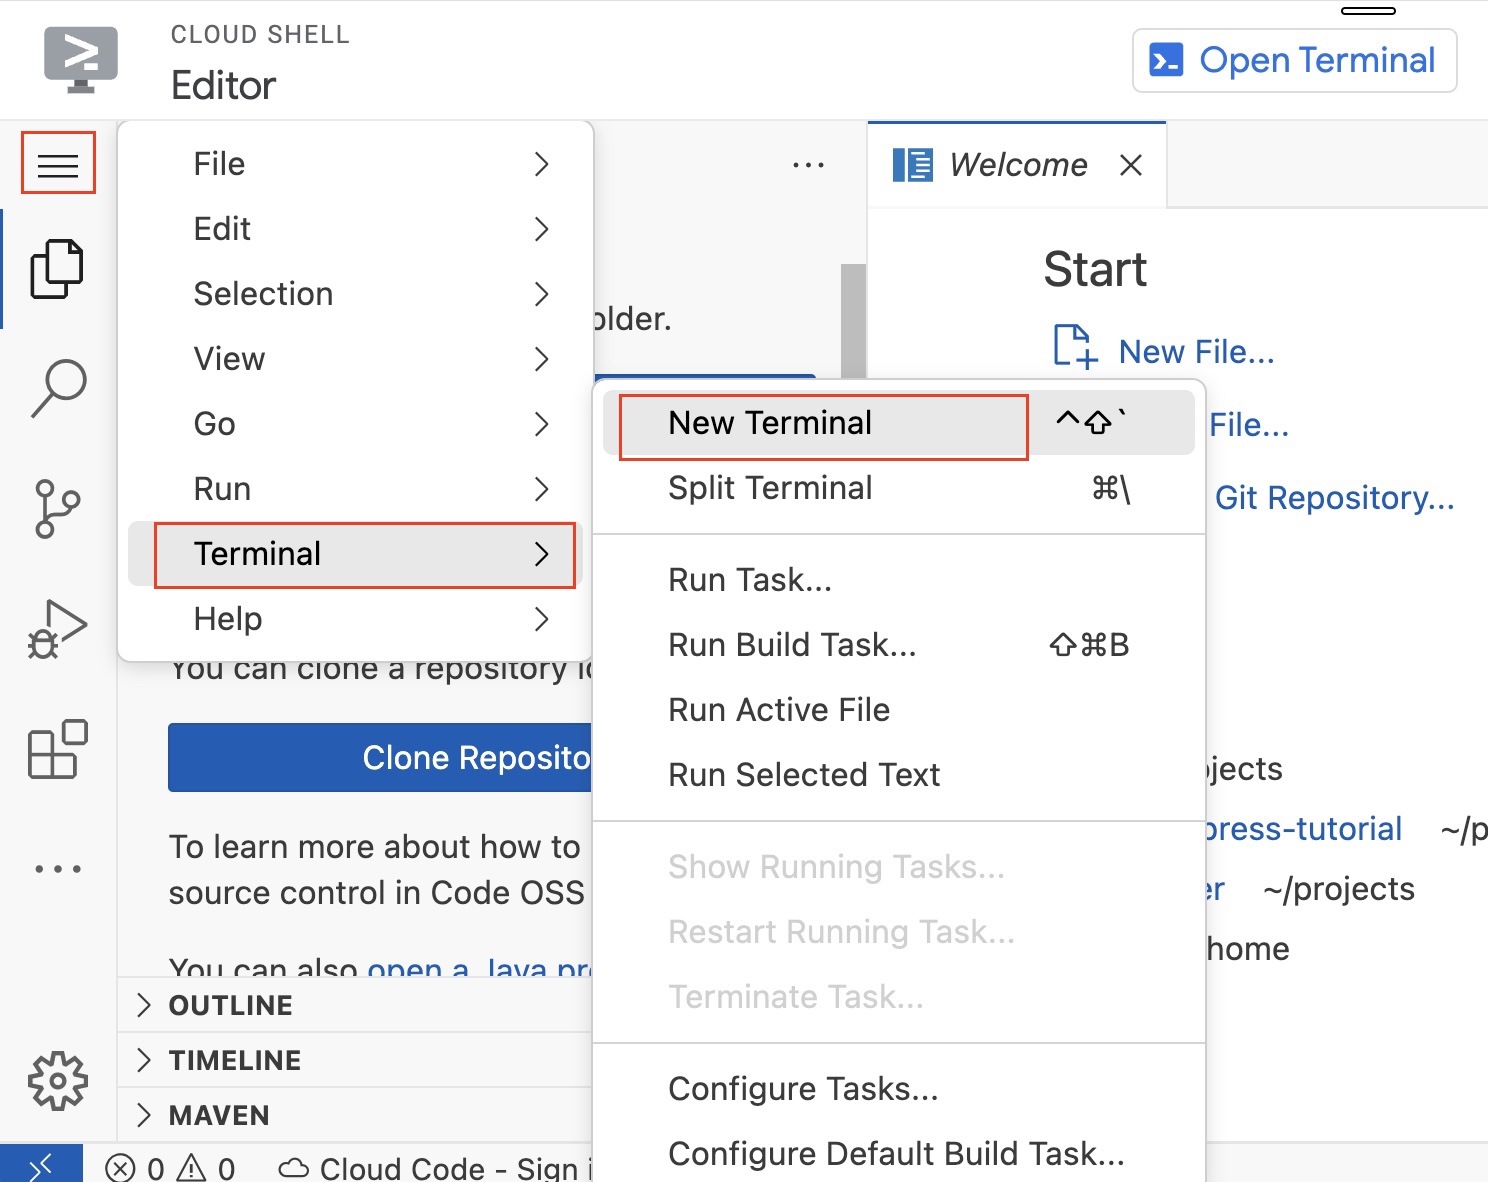 Open terminal in editor